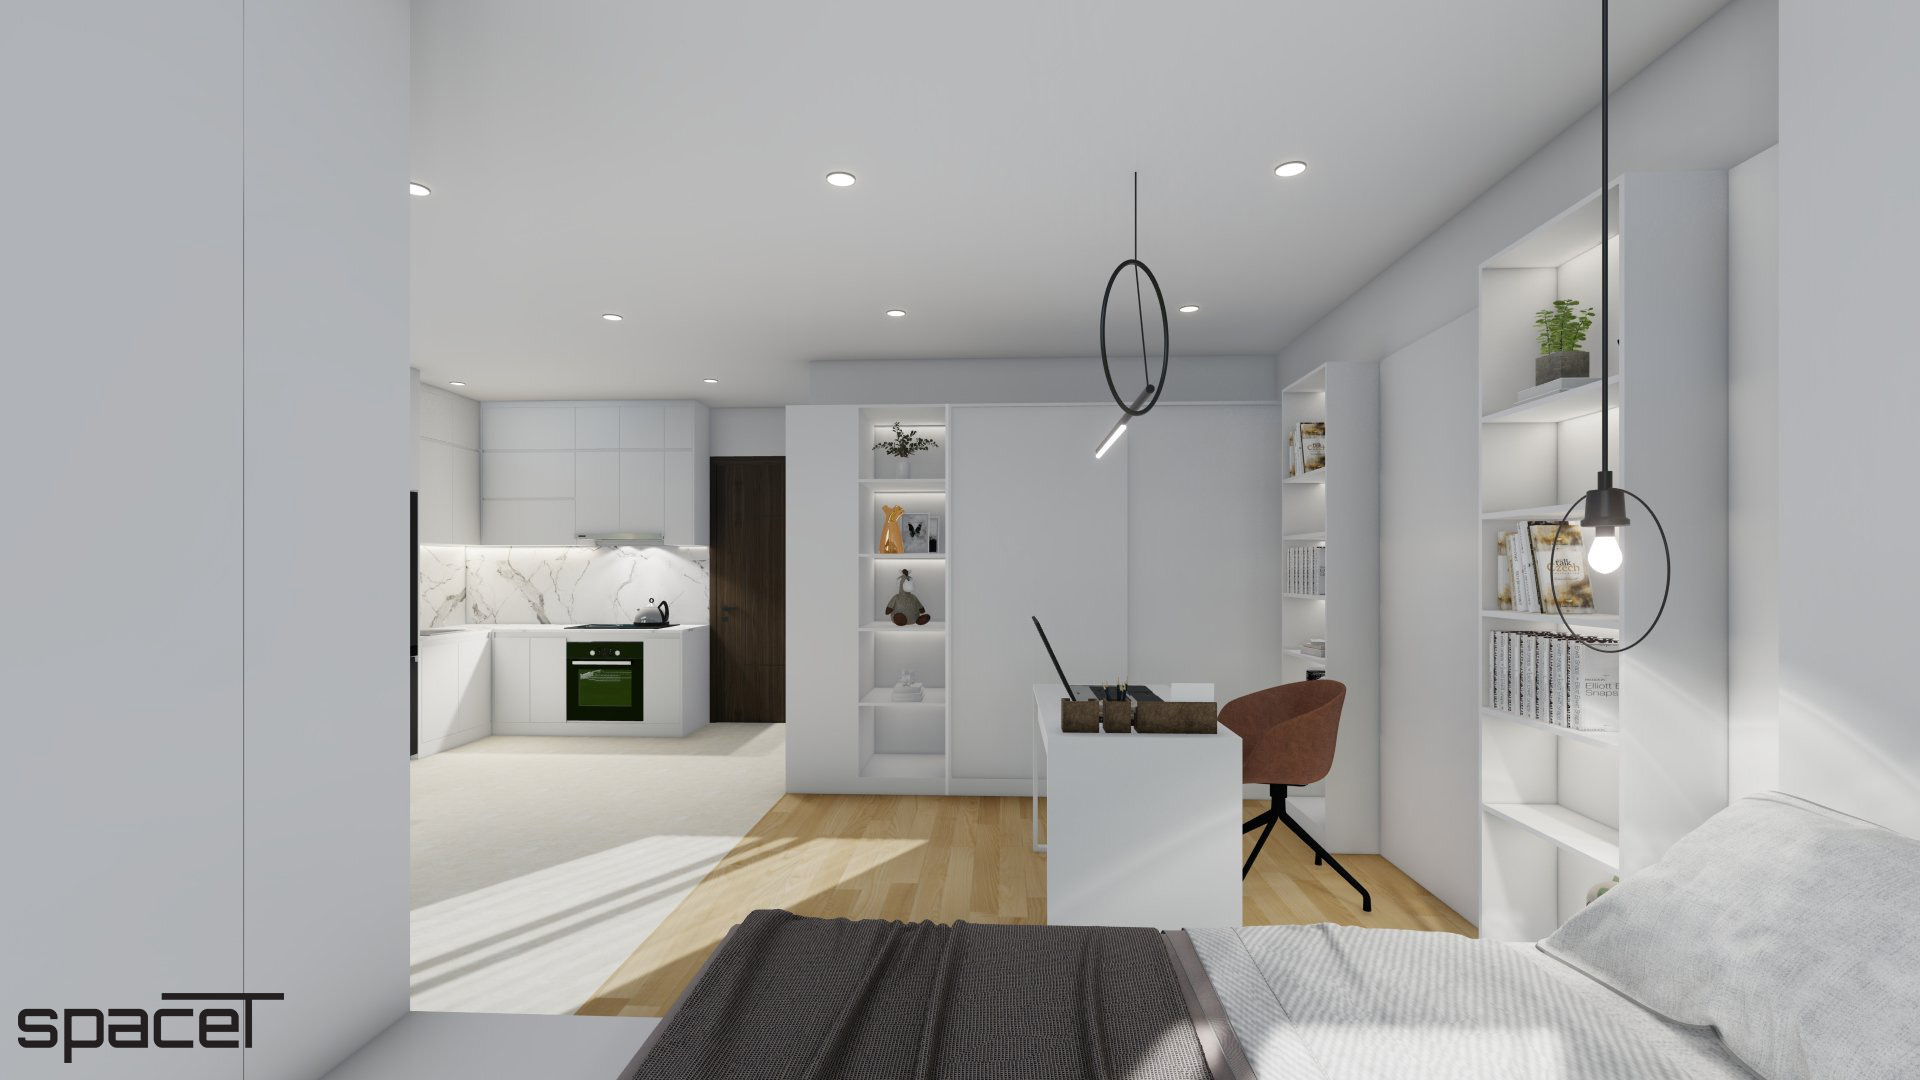 Phòng làm việc, phong cách Tối giản Minimalist, thiết kế concept nội thất, căn hộ The Origami Vinhomes Quận 9